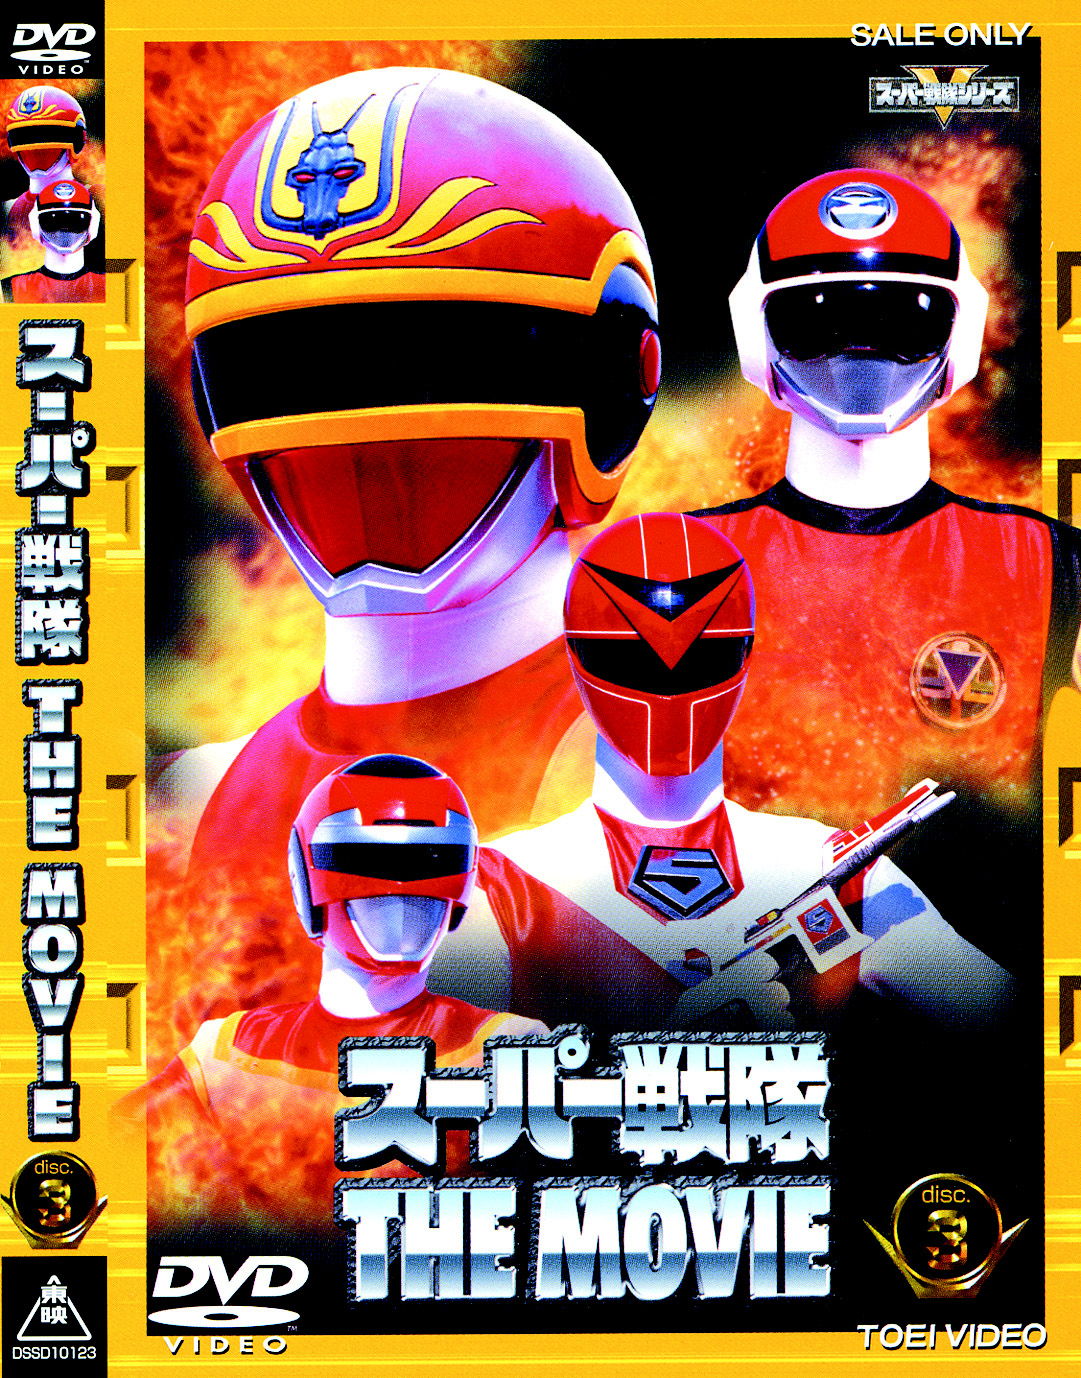 スーパー戦隊シリーズ 地球戦隊ファイブマンVOL.3【DVD】 g6bh9ry www